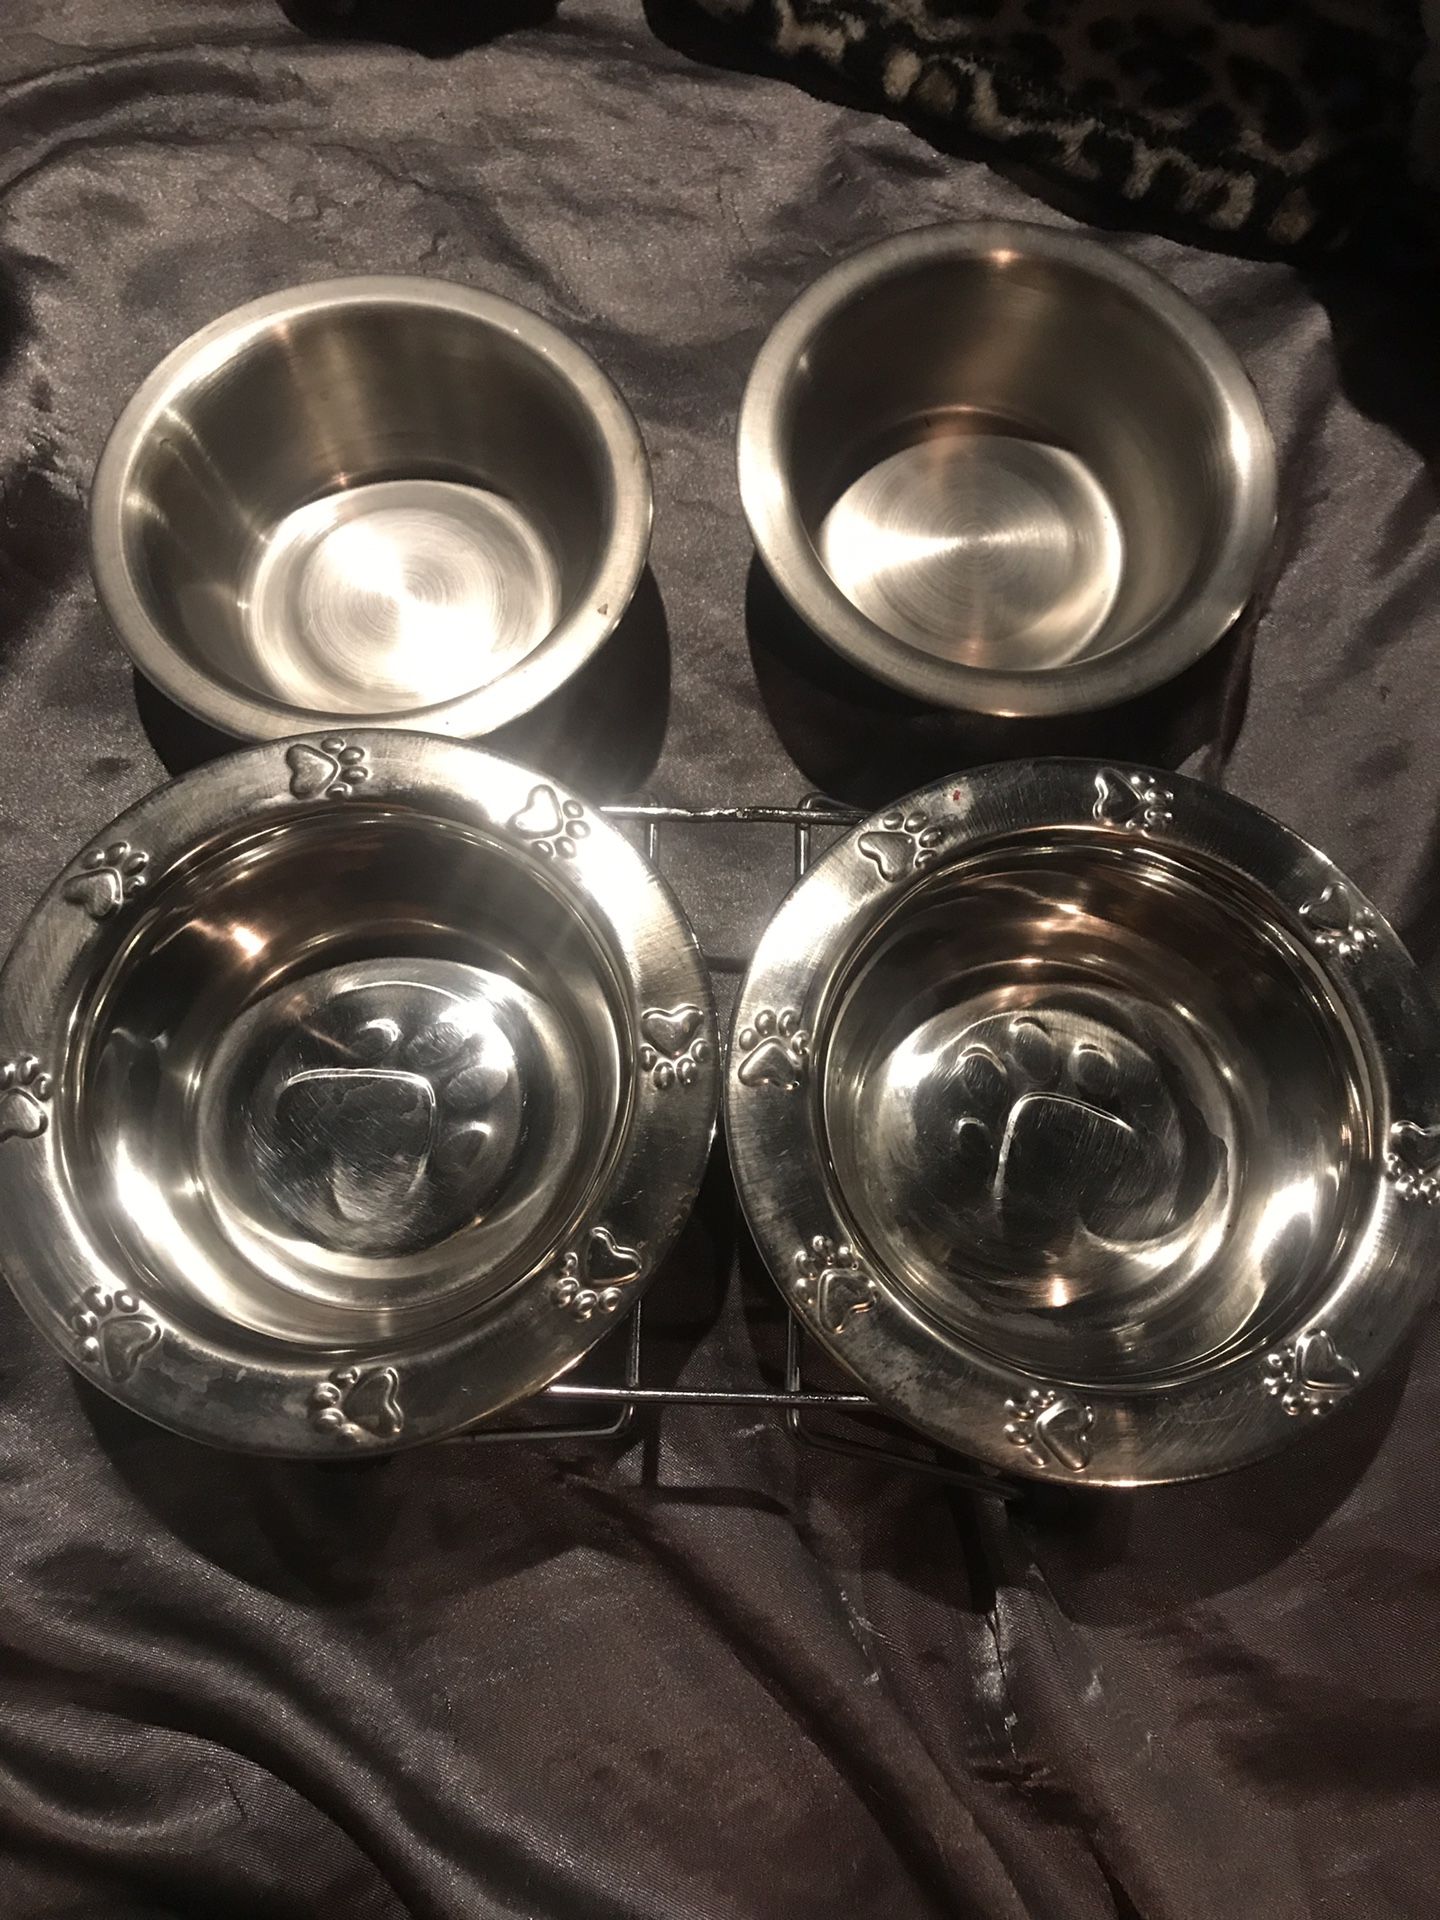 Dog tray & set of bowls